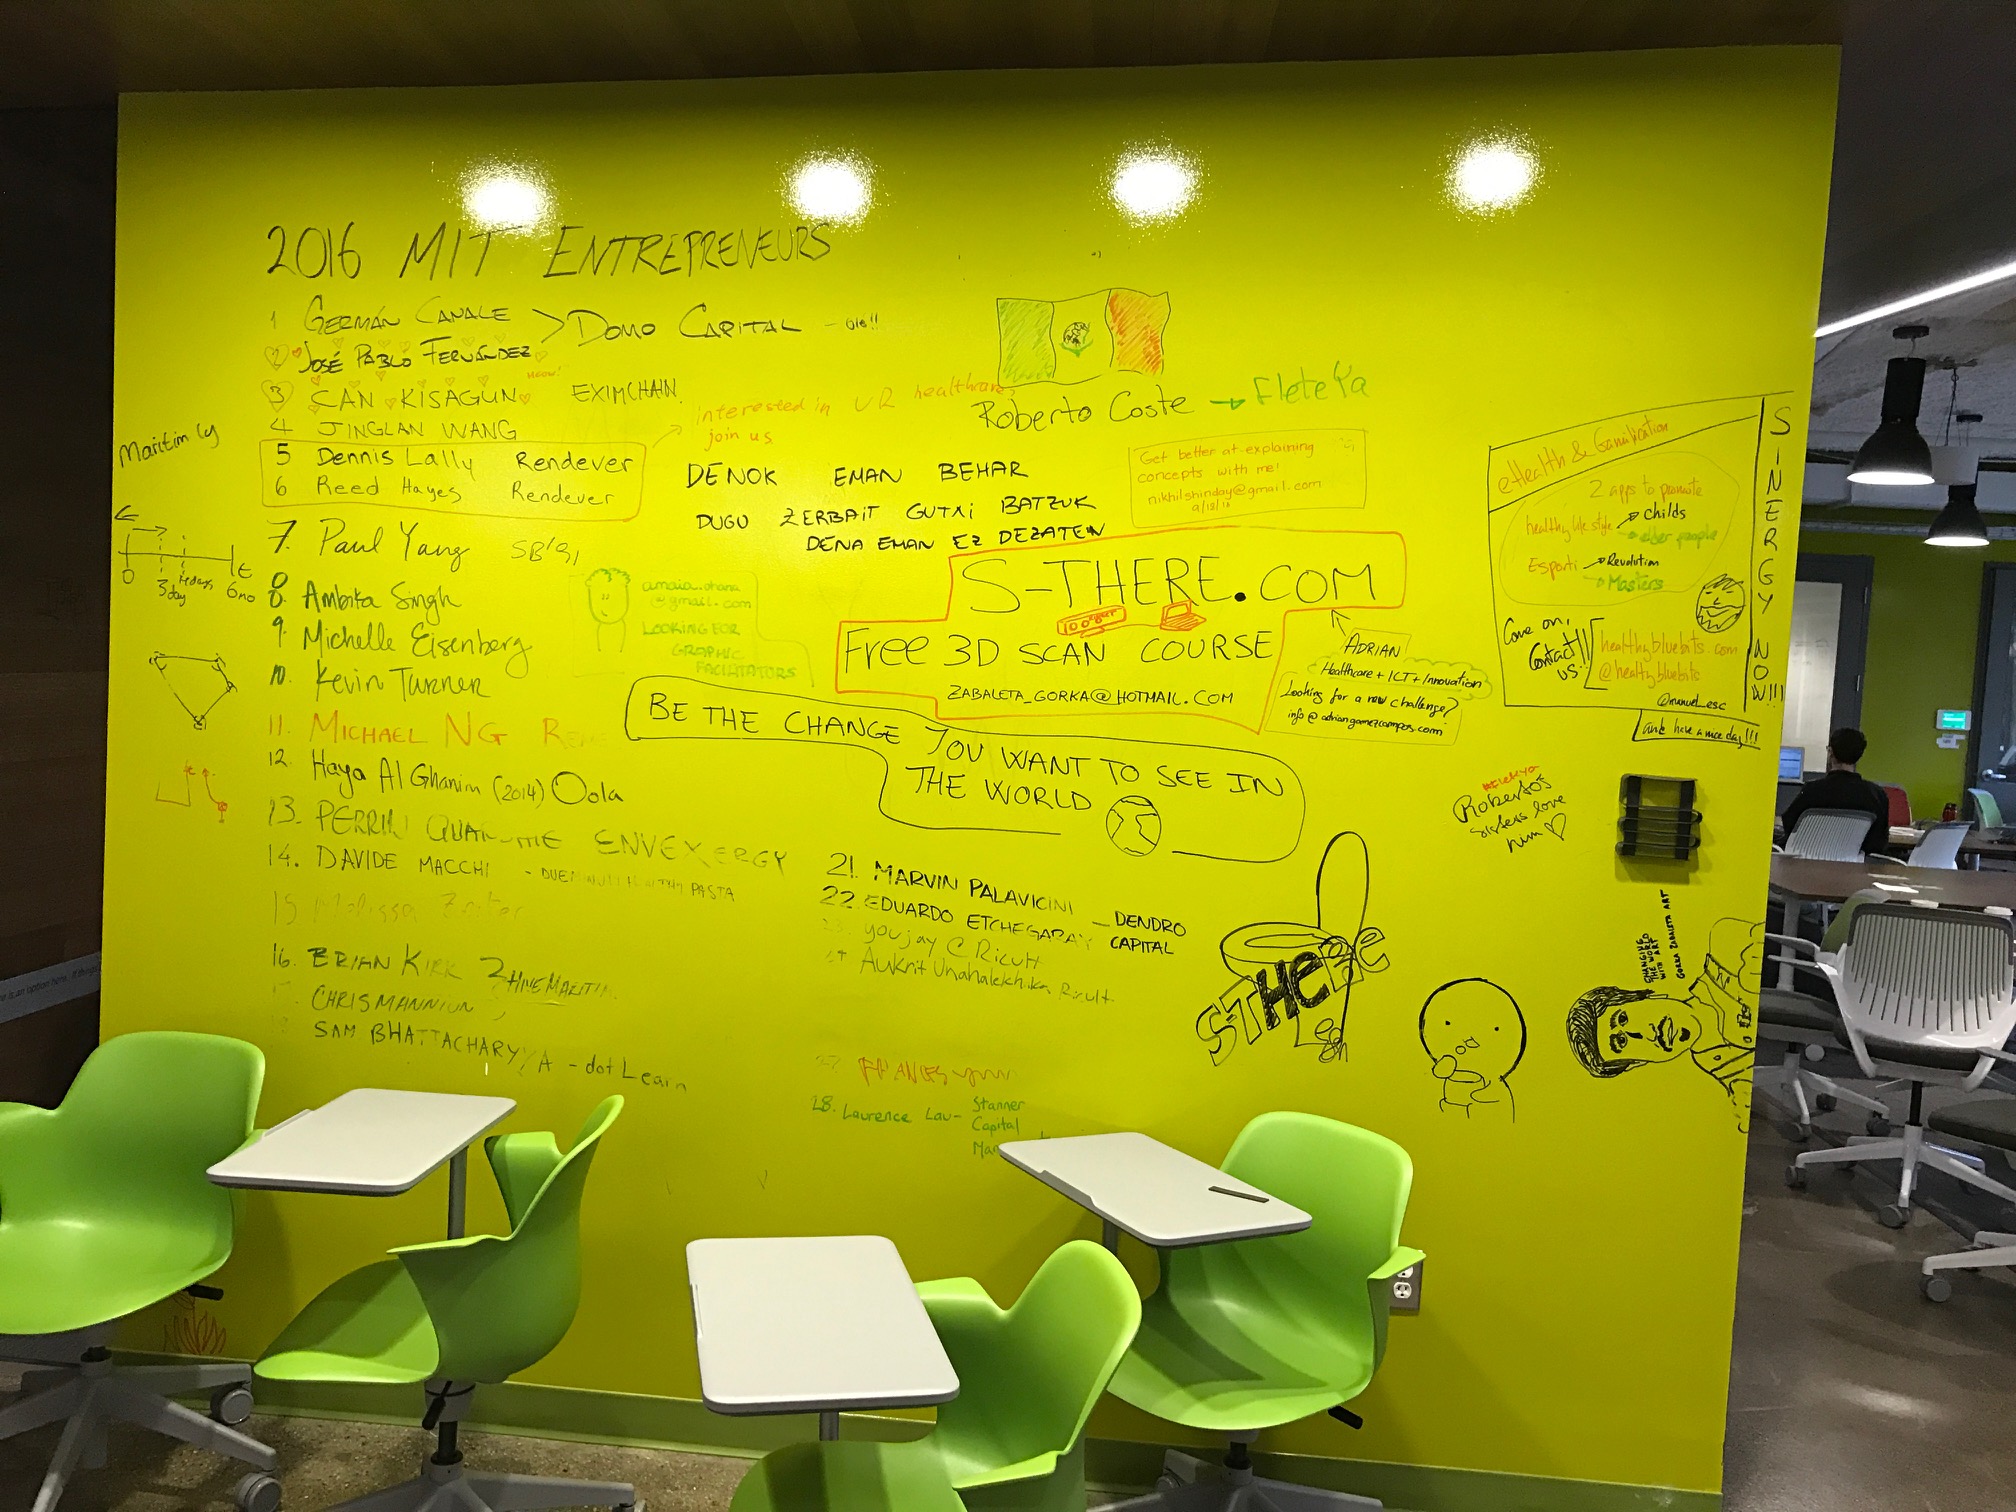 Whiteboard tavla full med tankar och uppslag efter en session på MIT träff i Boston med innovationsledare